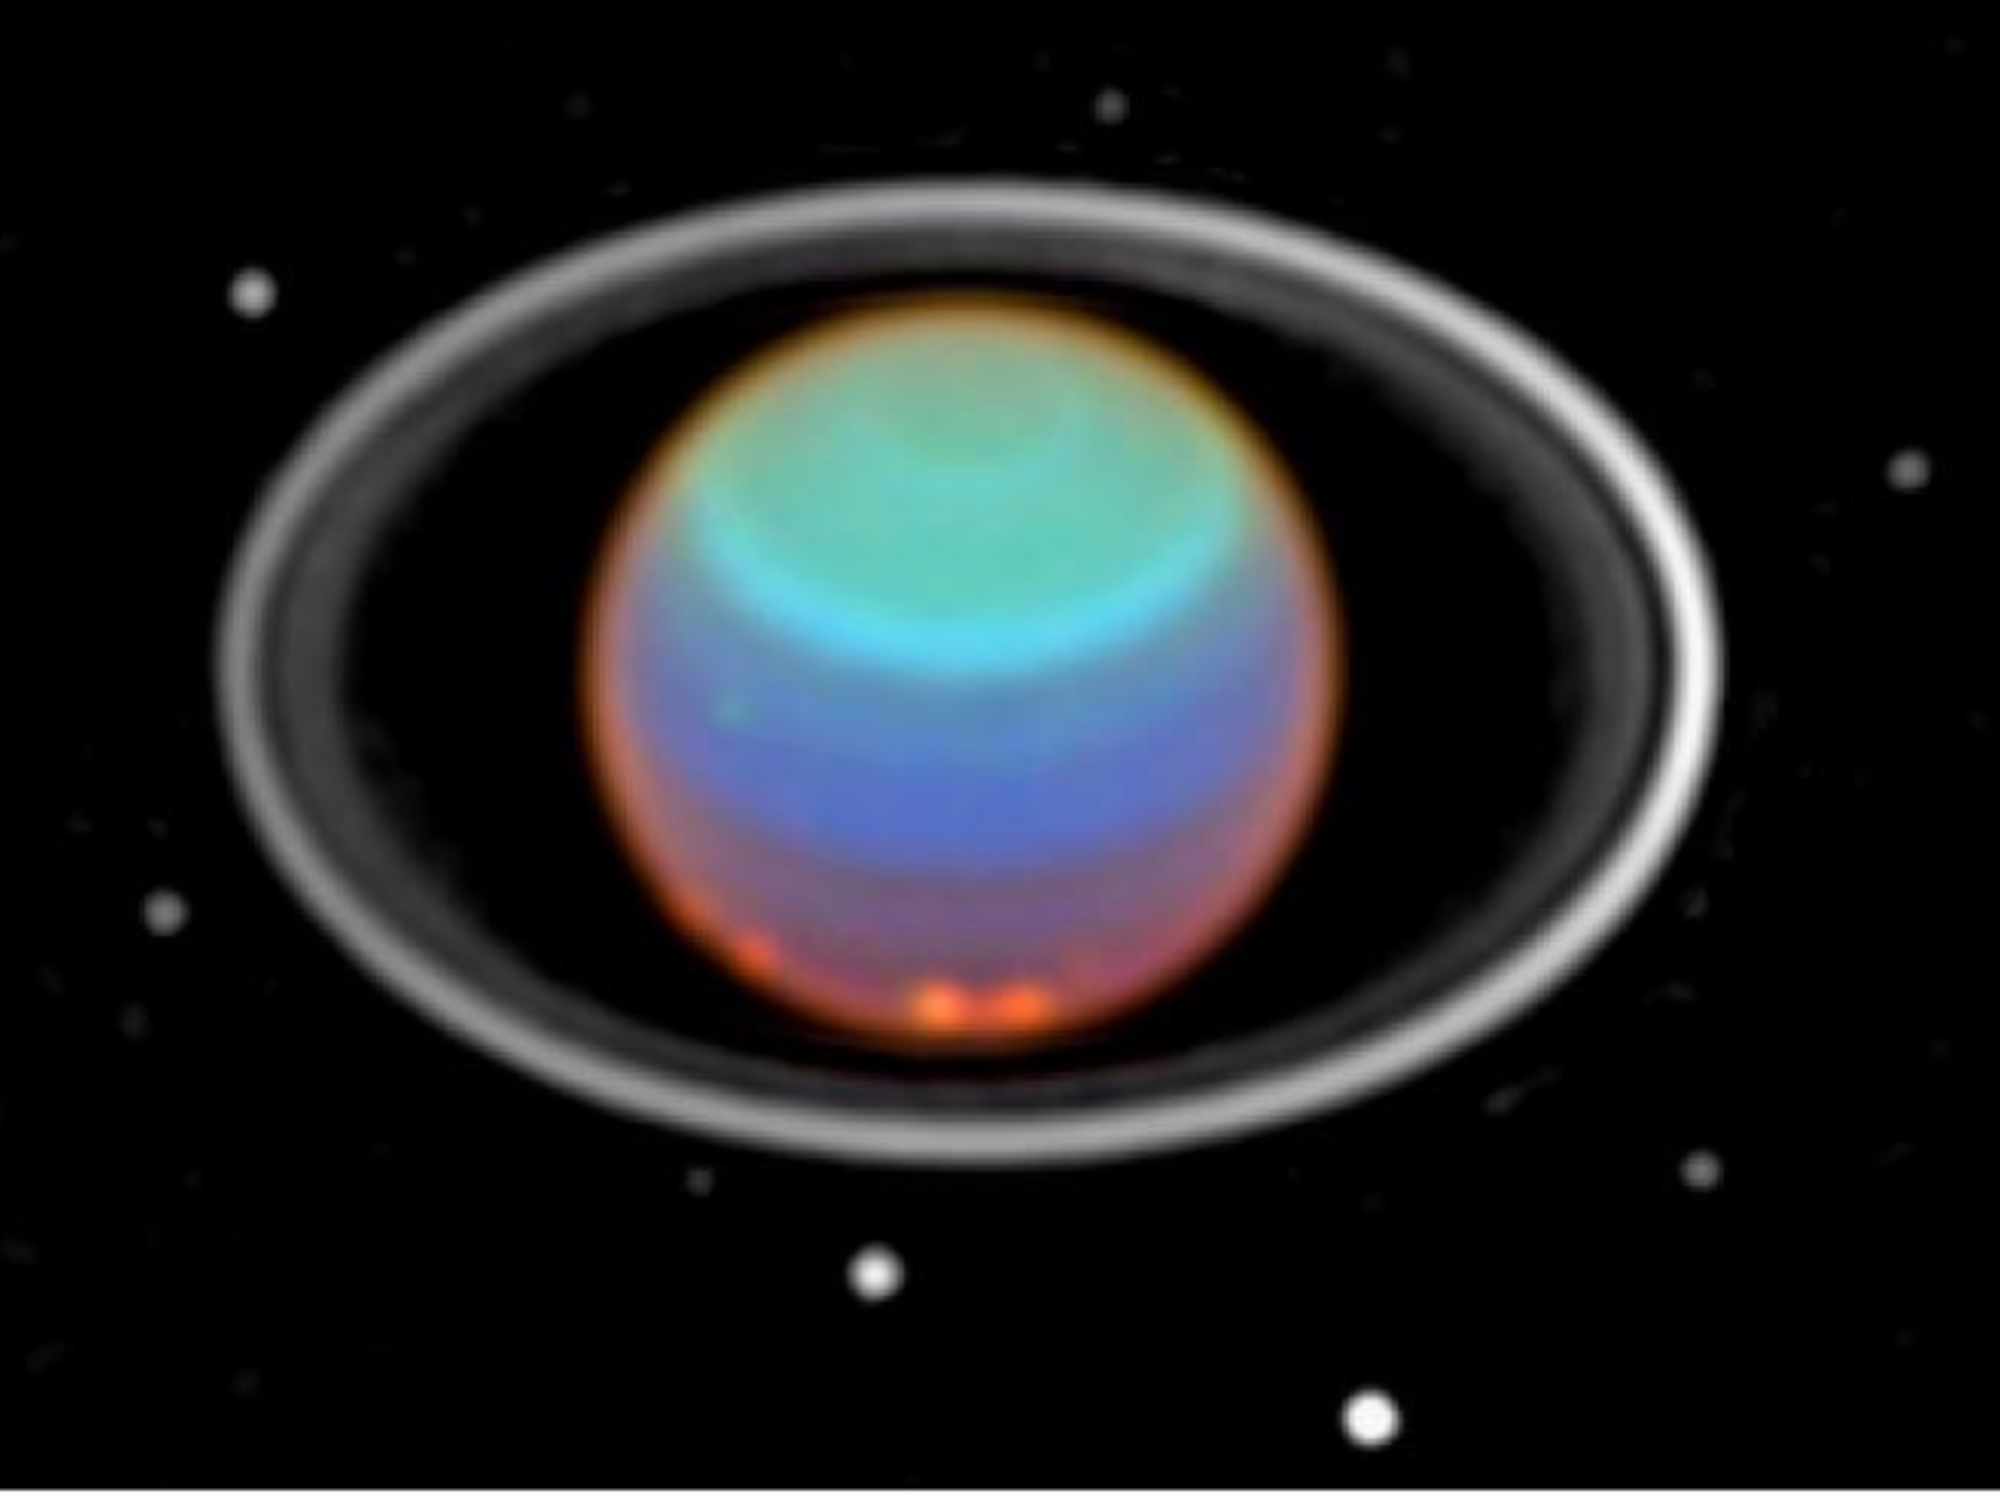 De zevende planeet nabij de aarde – Uranus en het Chinese ruimtevaartuig